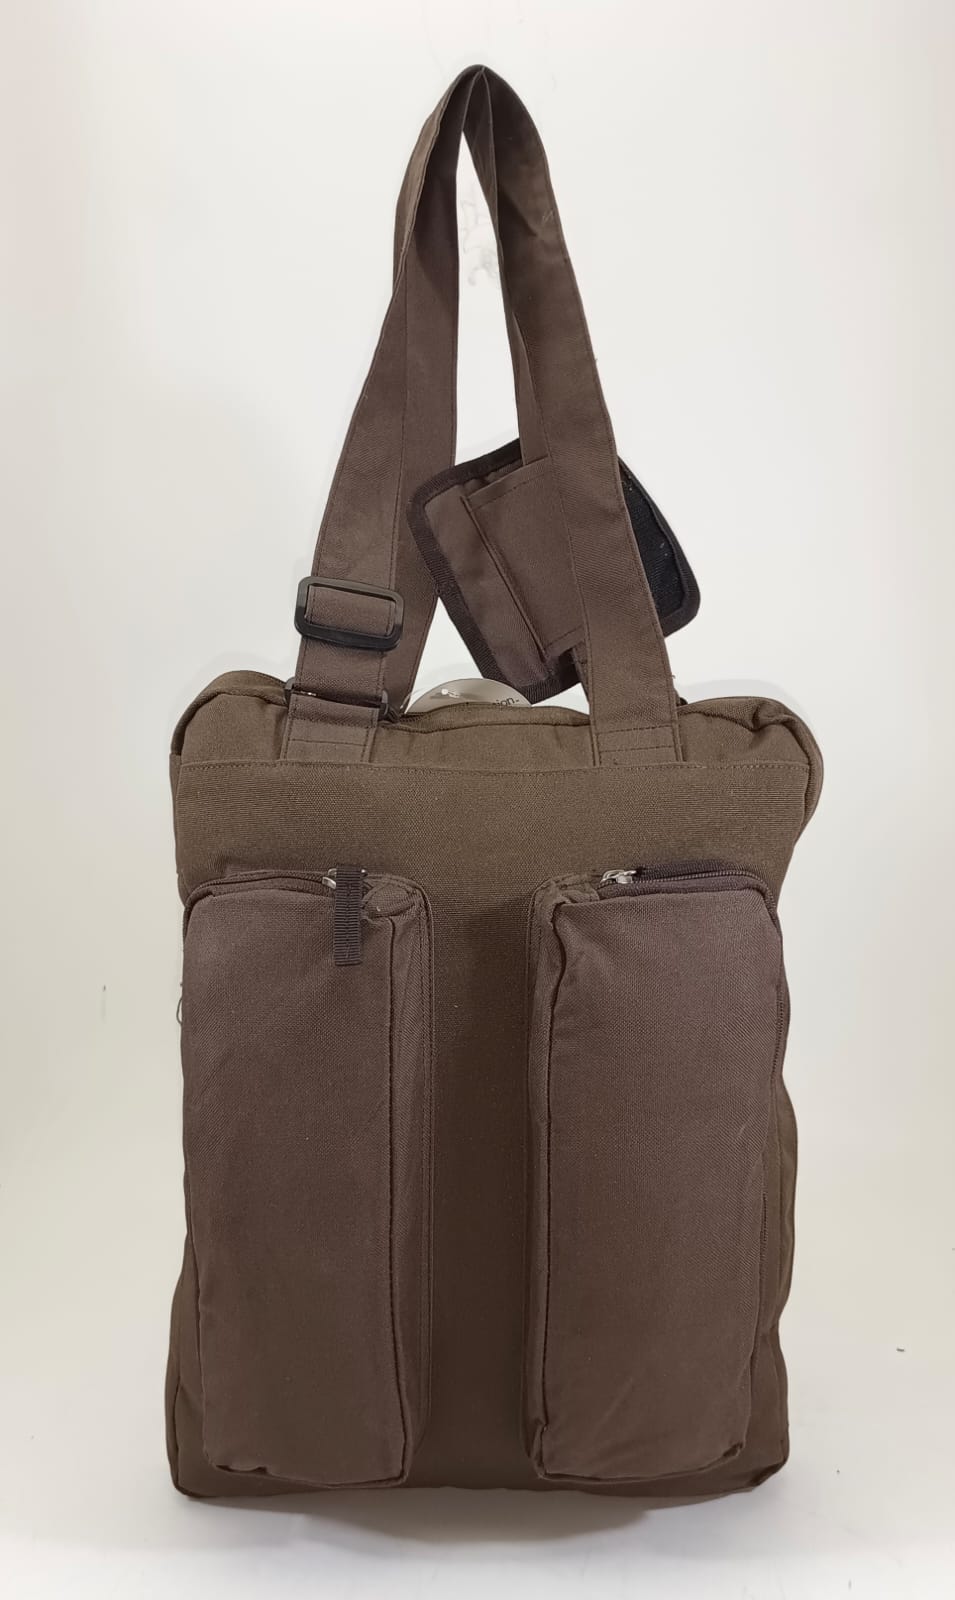 Woman Travel Bag , Hand bag